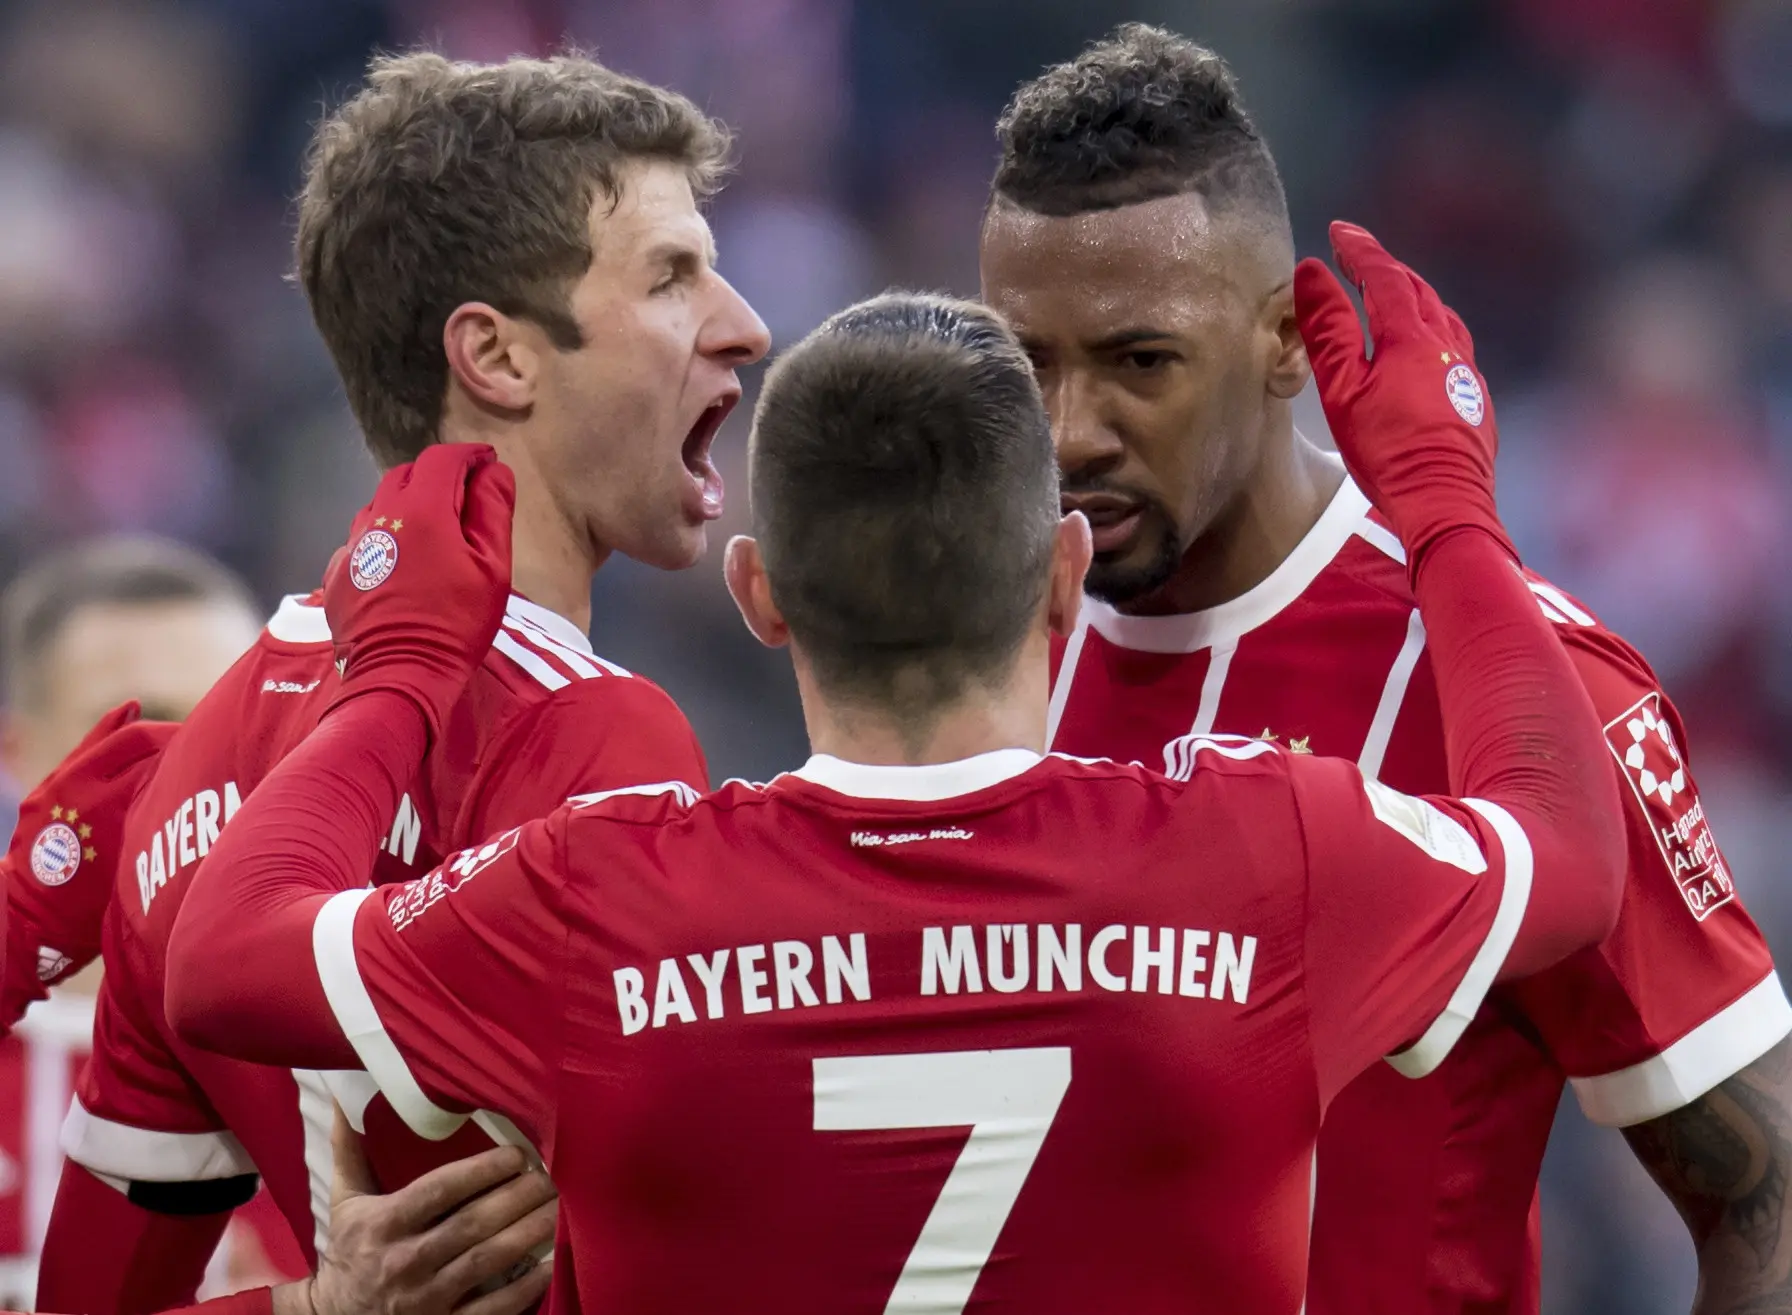 Bayern Munchen berhasil mengatasi perlawanan Werder Bremen pada laga pekan ke-19 Bundesliga 2017-2018 di Allianz Arena, Minggu (21/1/2018). (Sven Hoppe/dpa via AP)